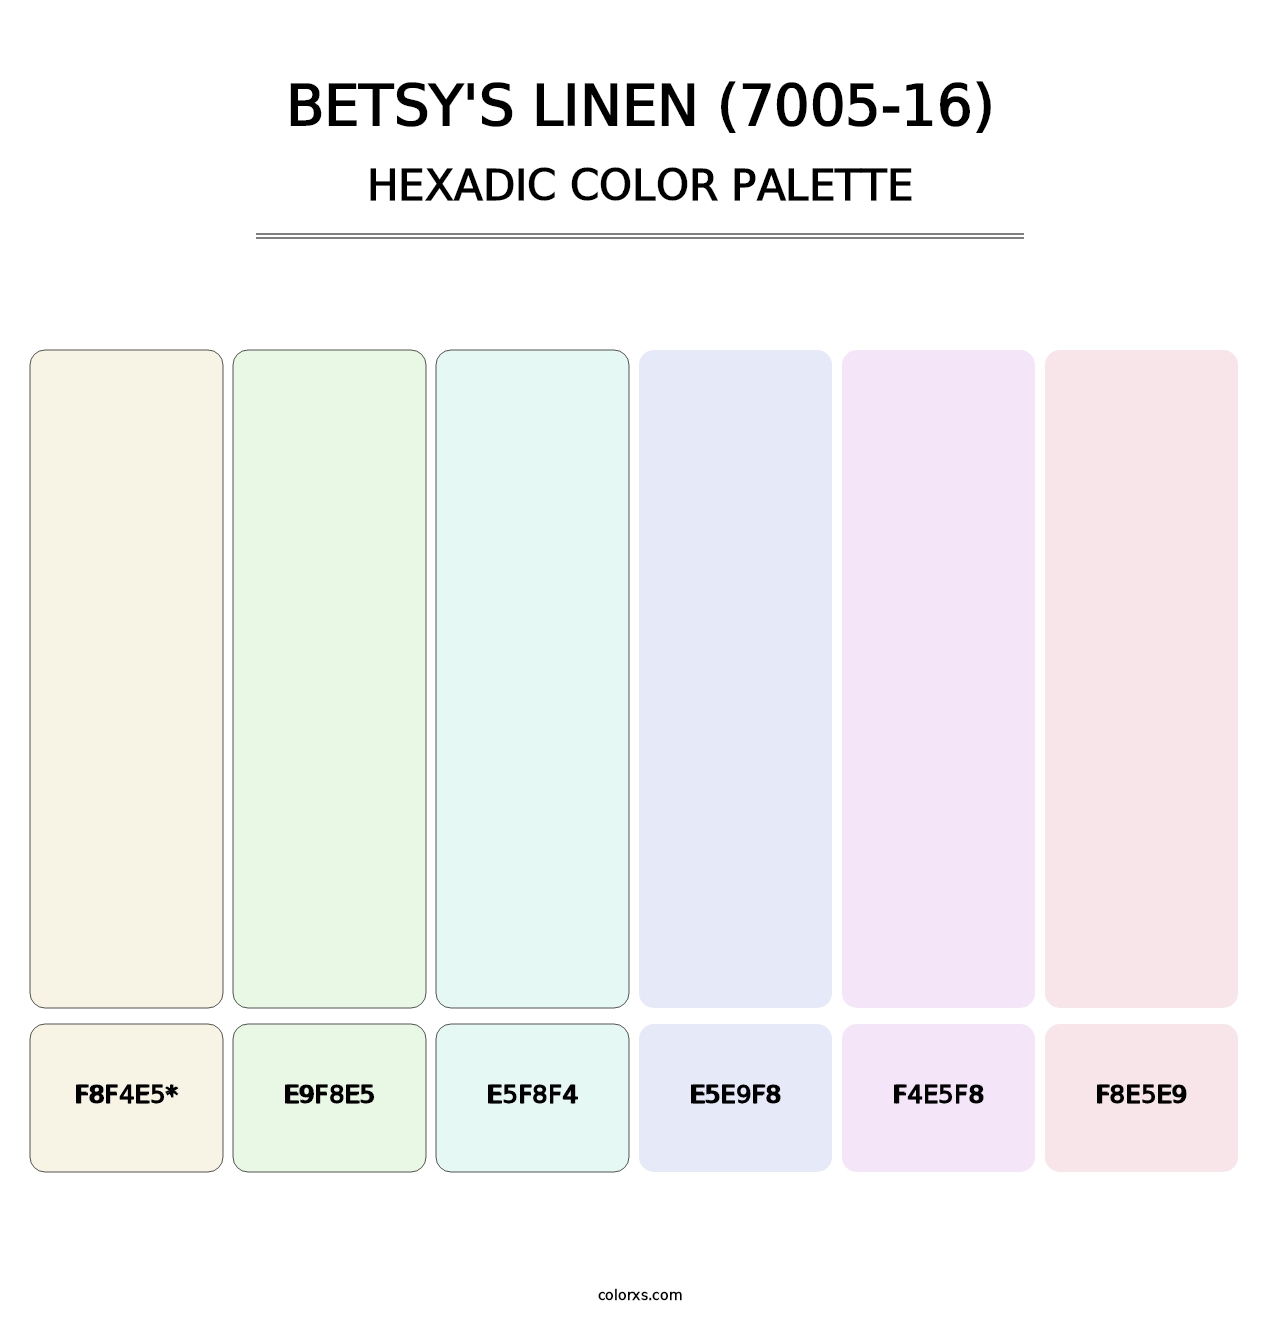 Betsy's Linen (7005-16) - Hexadic Color Palette